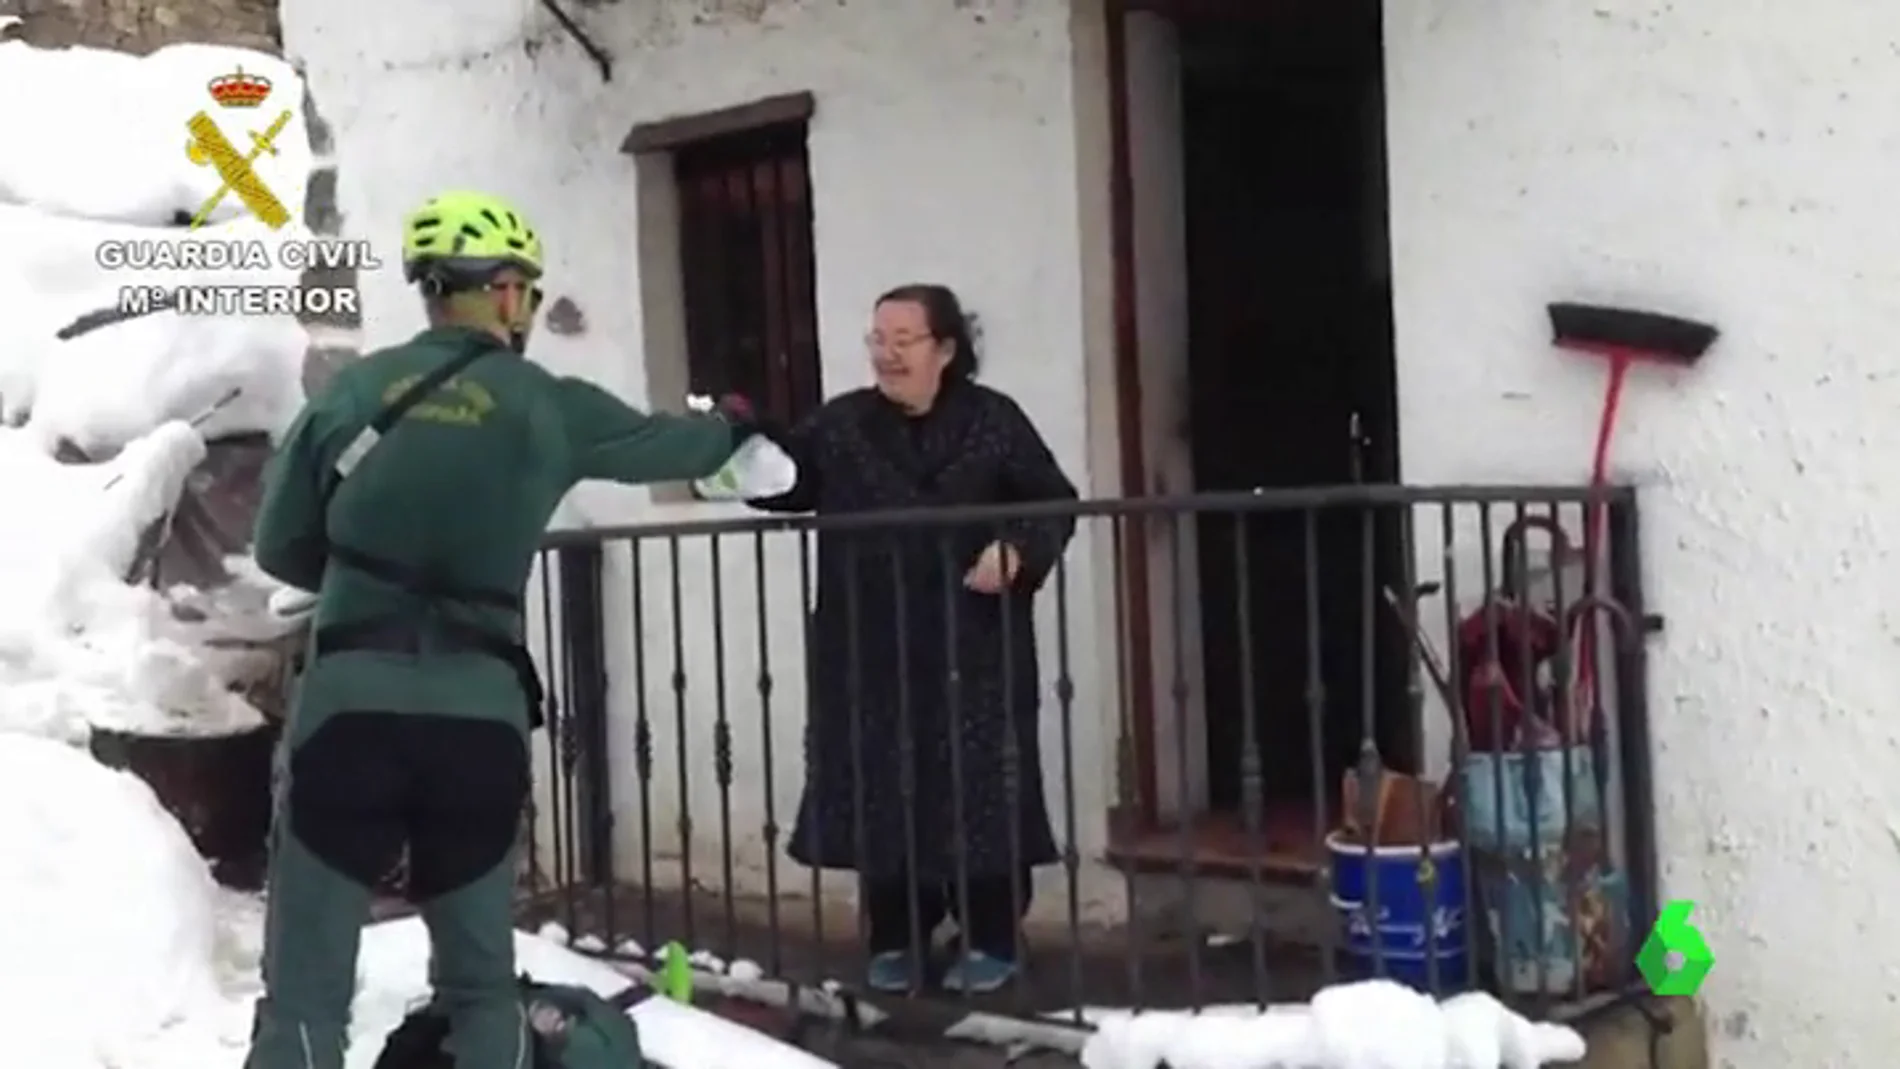 La Guardia Civil entrega medicinas a una mujer en Asturias